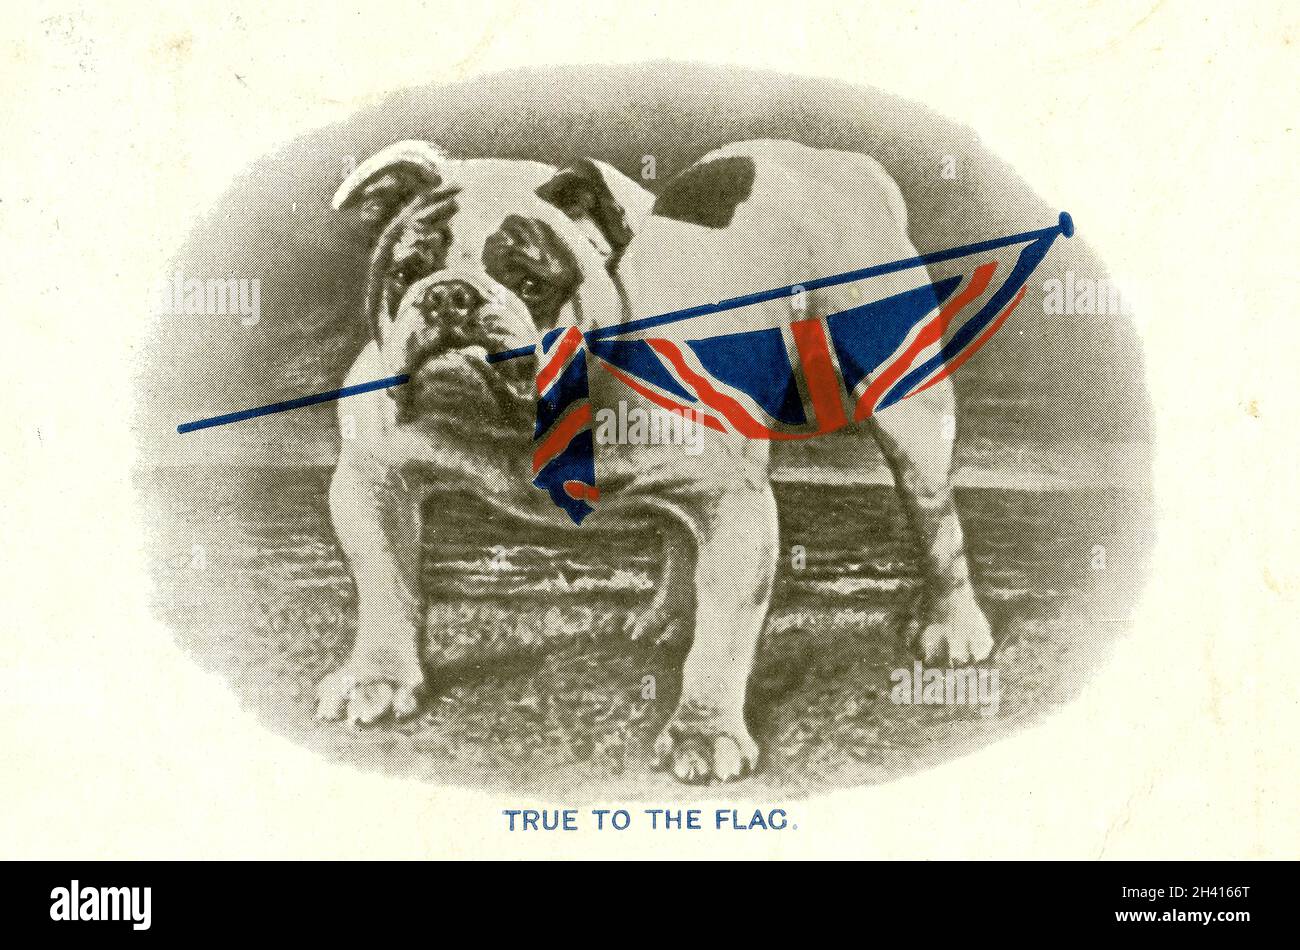 Originalpostkarte aus der Zeit des 1. Weltkriegs mit Bulldogge mit Union Jack-Flagge, getreu der Flagge, zitiert Tennyson Britons Hold Your Own von C.W. Faulkner & Co.Ltd London Serie 1458, veröffentlicht am 19. Oktober 1914 Stockfoto